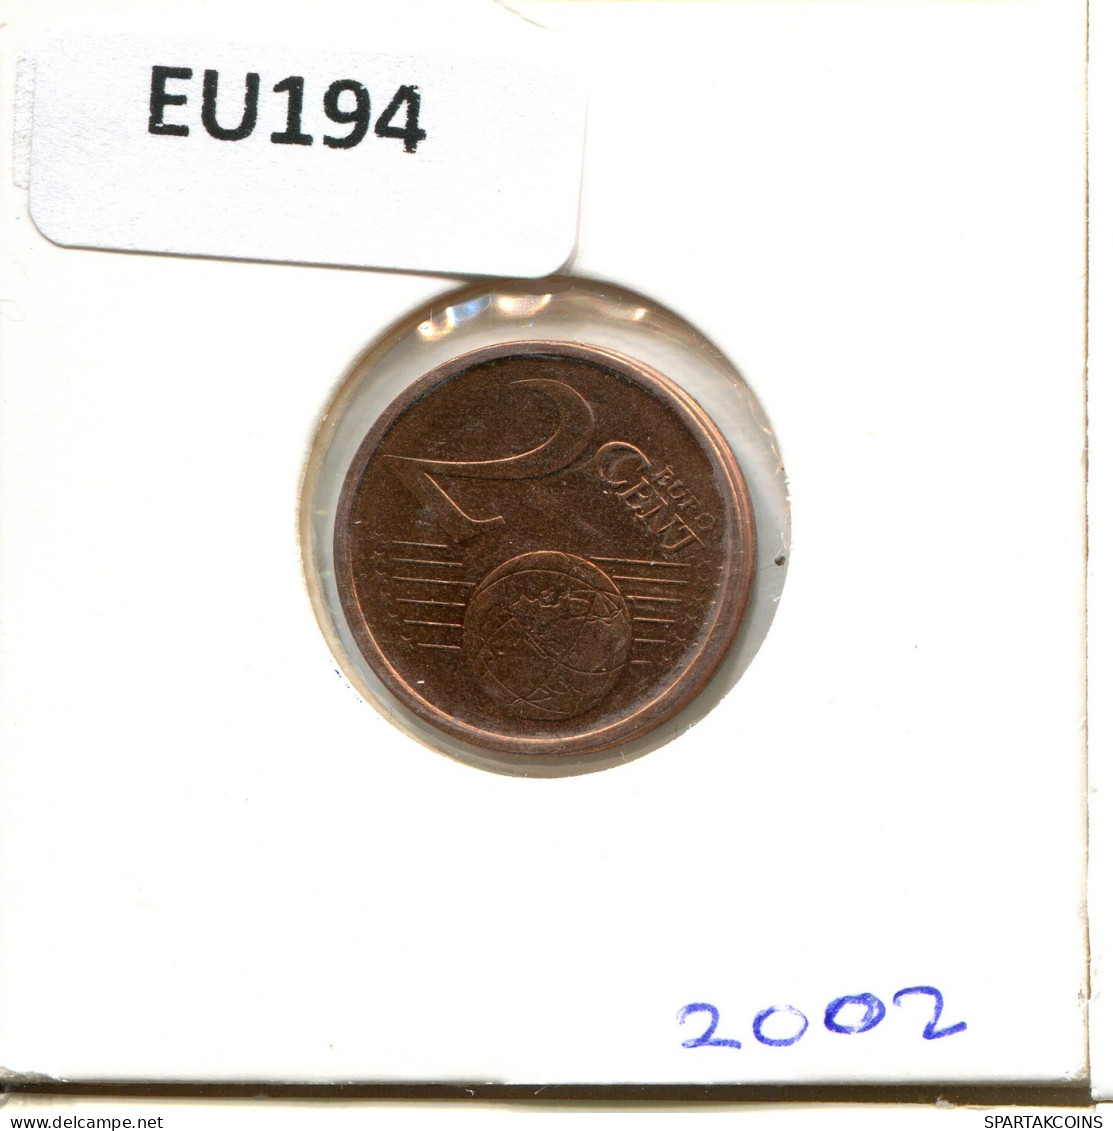 2 EURO CENTS 2002 IRLANDA IRELAND Moneda #EU194.E - Ireland